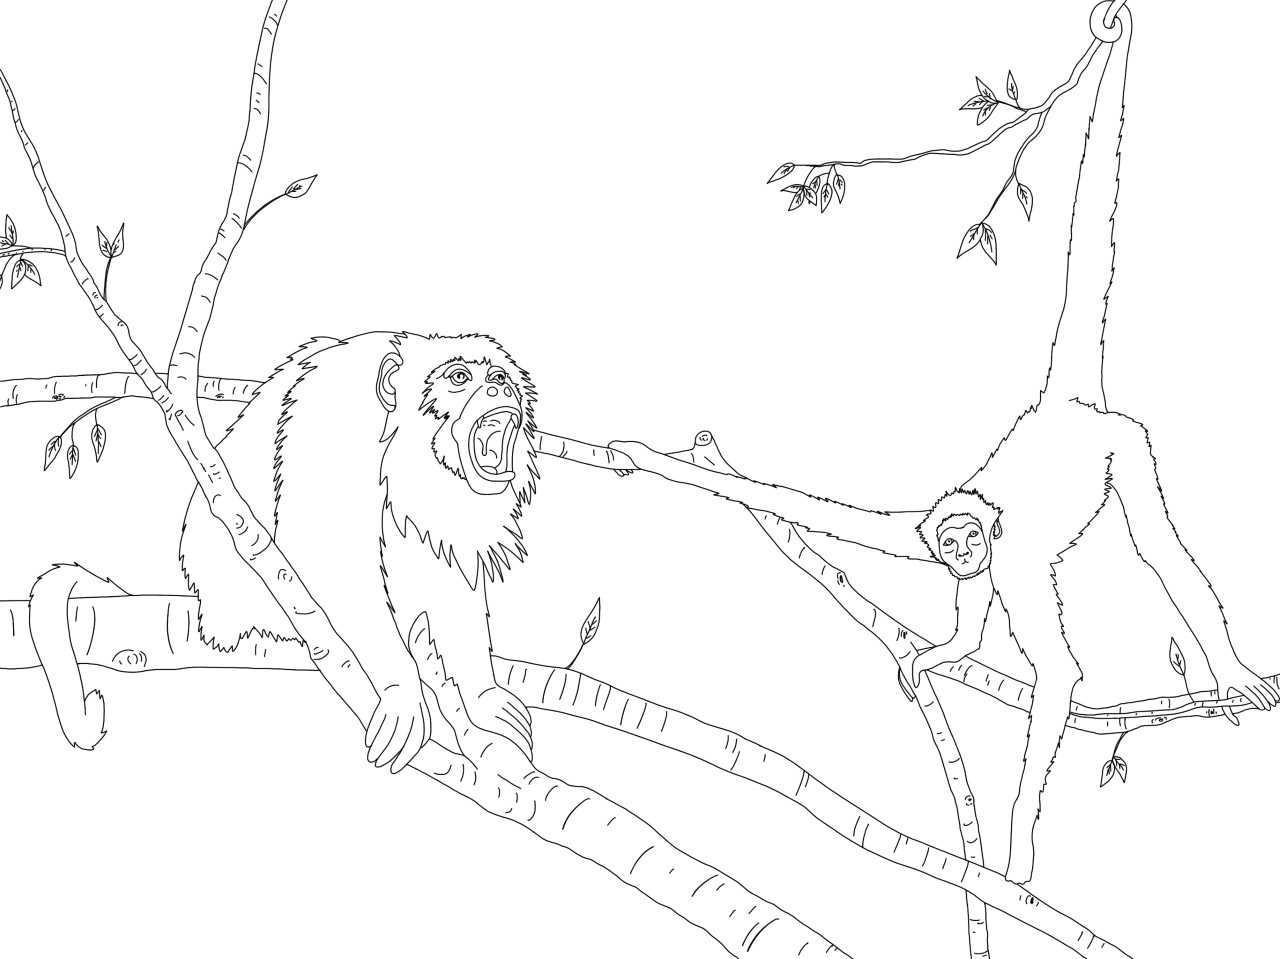 Howler monkey, spider monkey